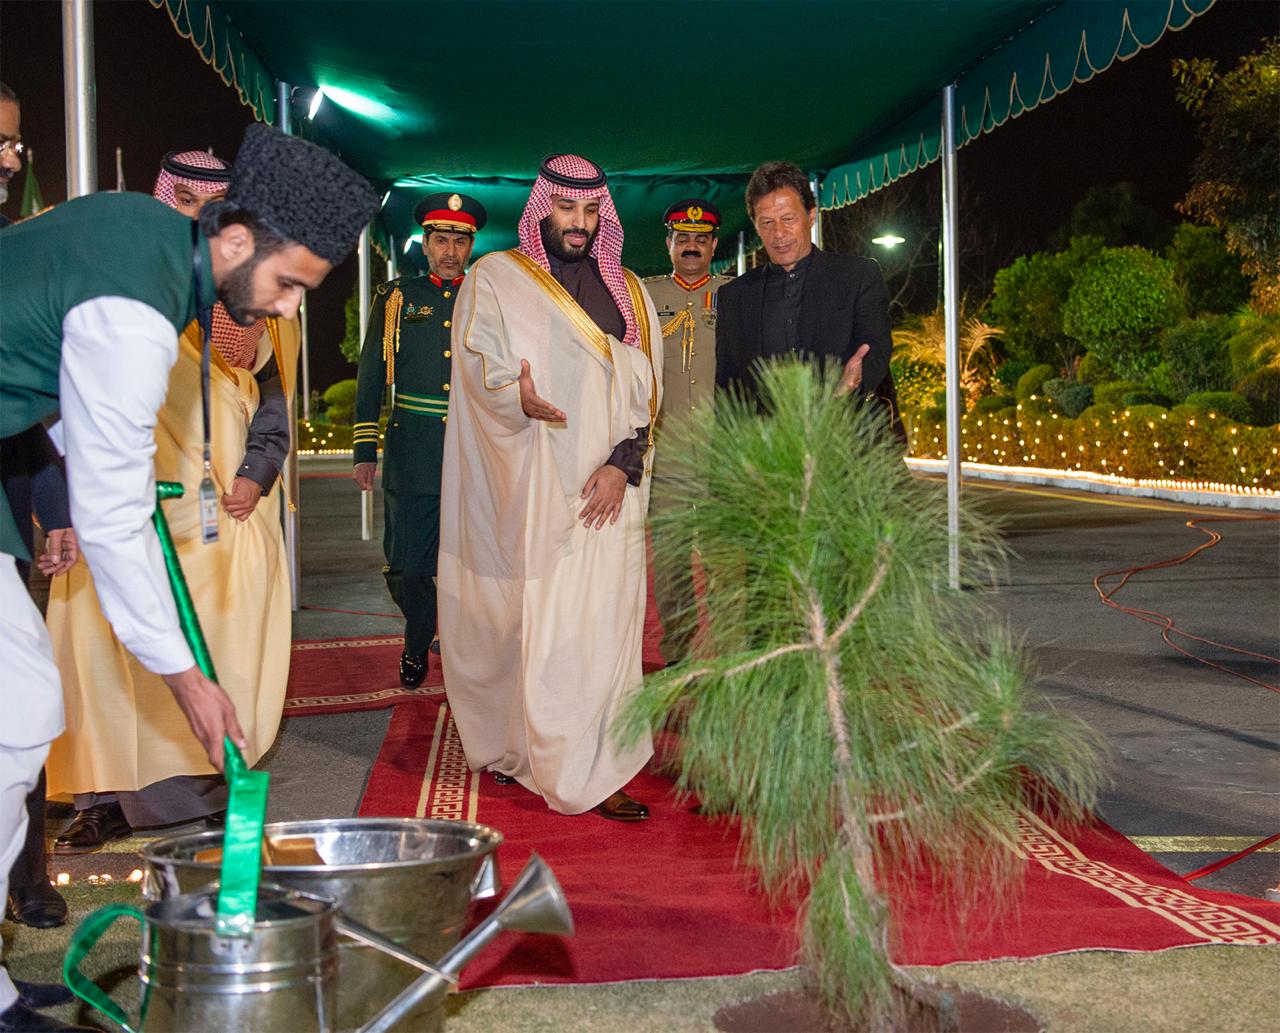 لقطات جديدة لاستقبال الأمير محمد بن سلمان في باكستان وتوقيع الاتفاقيات.. ورود ونبتة المستقبل